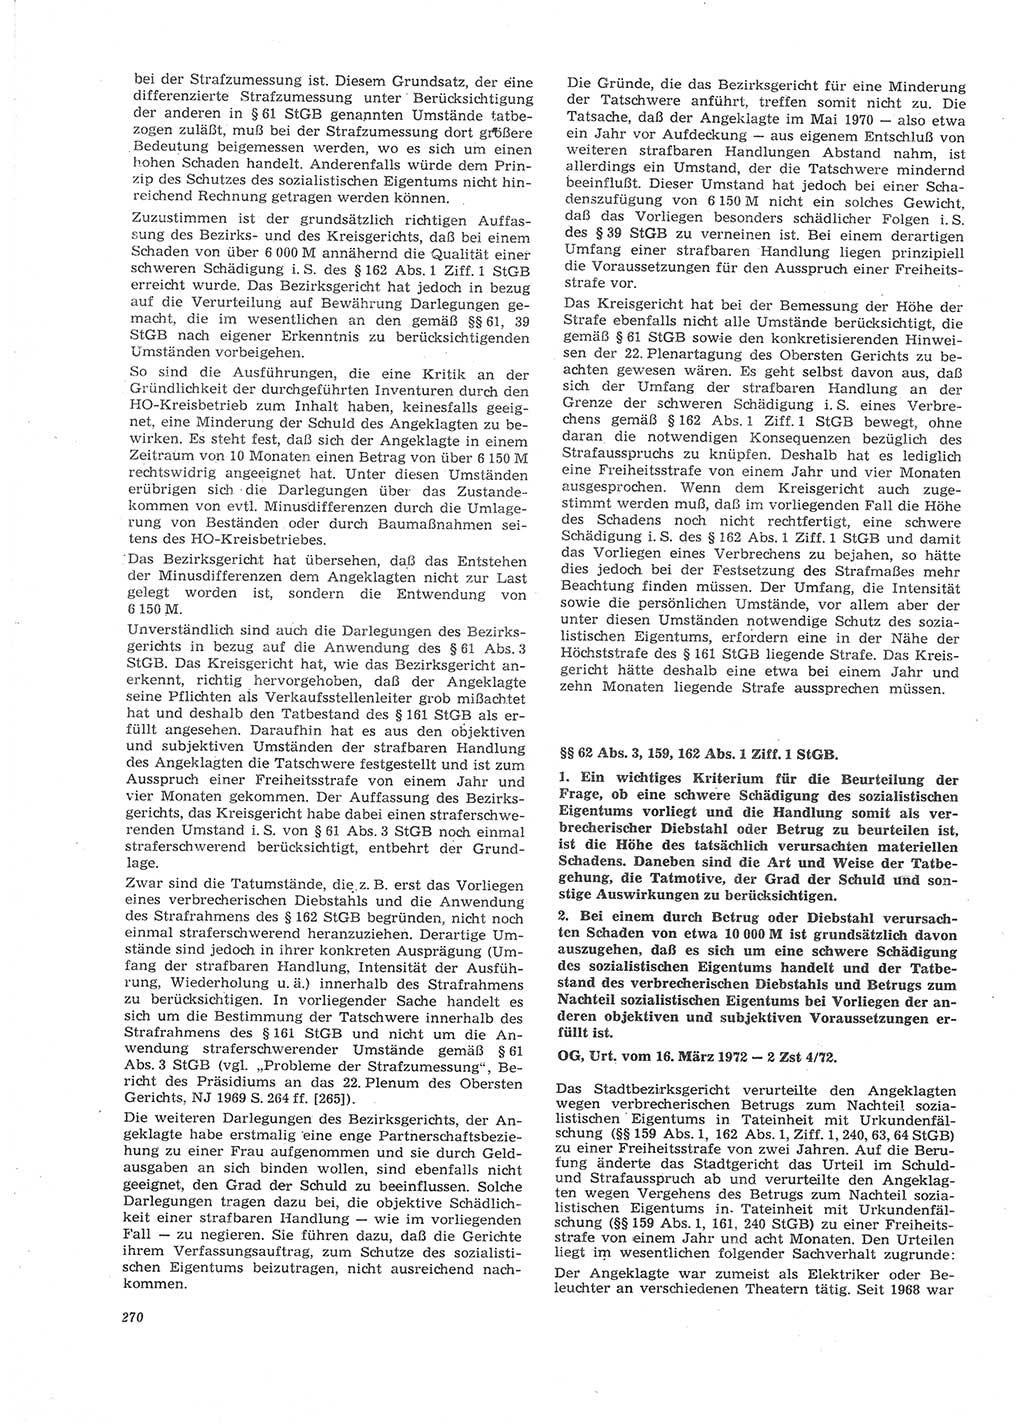 Neue Justiz (NJ), Zeitschrift für Recht und Rechtswissenschaft [Deutsche Demokratische Republik (DDR)], 26. Jahrgang 1972, Seite 270 (NJ DDR 1972, S. 270)